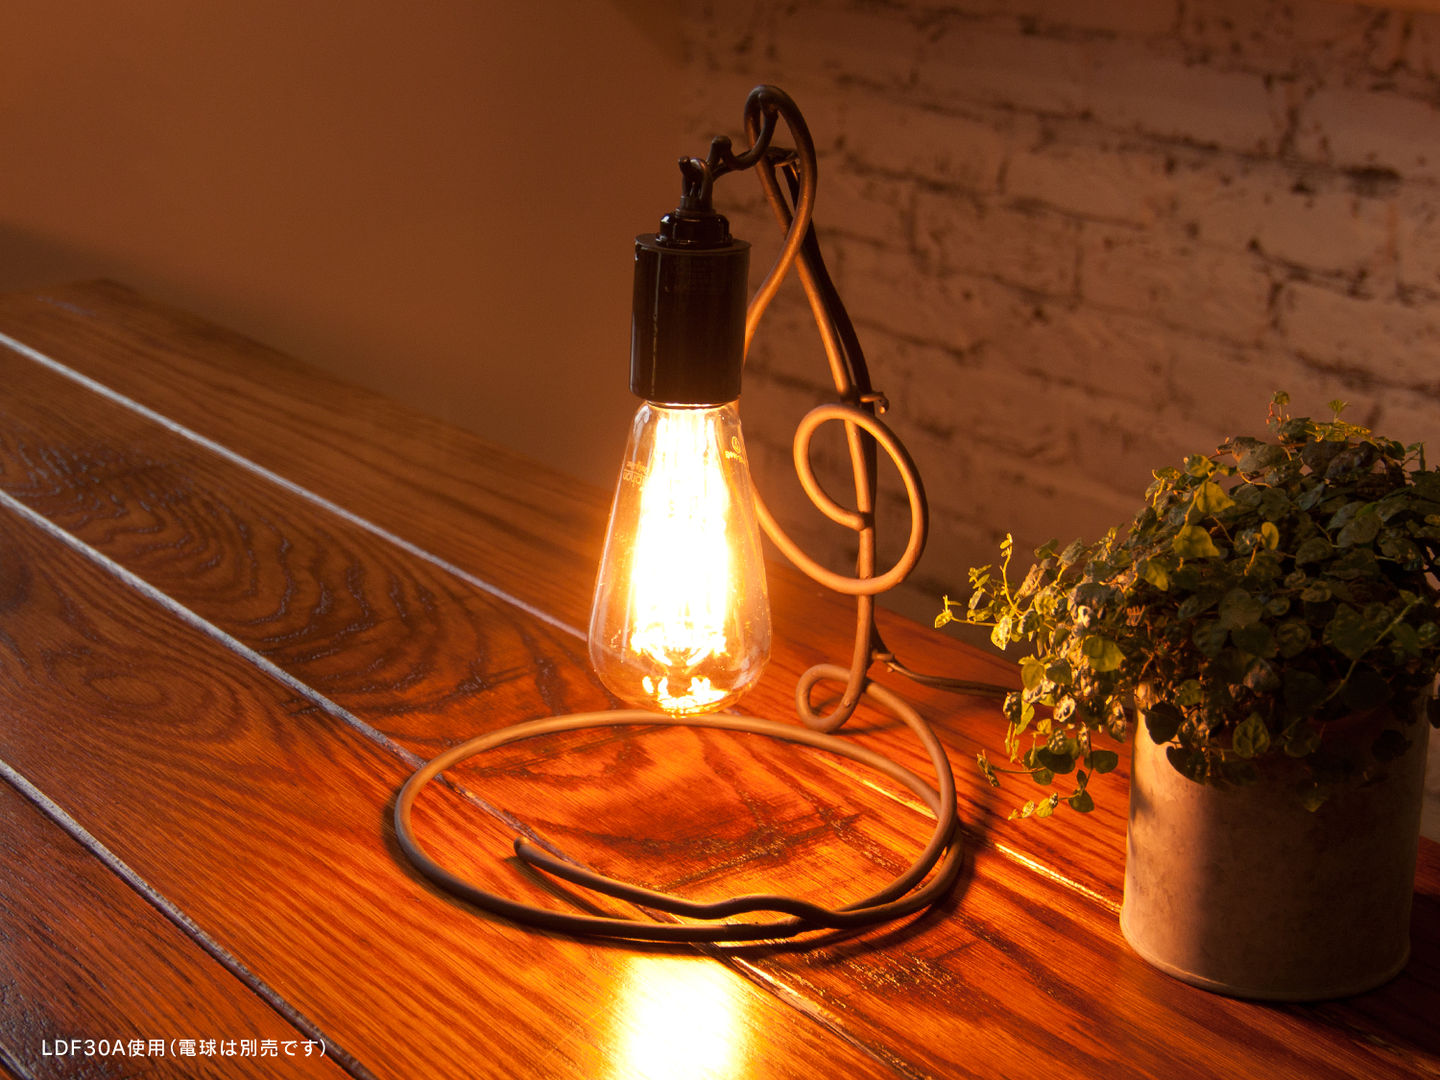 アイアンランプシェード「シルシェード」 Handmade Iron Lamp Shade, Only One Only One غرفة نوم الحديد / الصلب Lighting